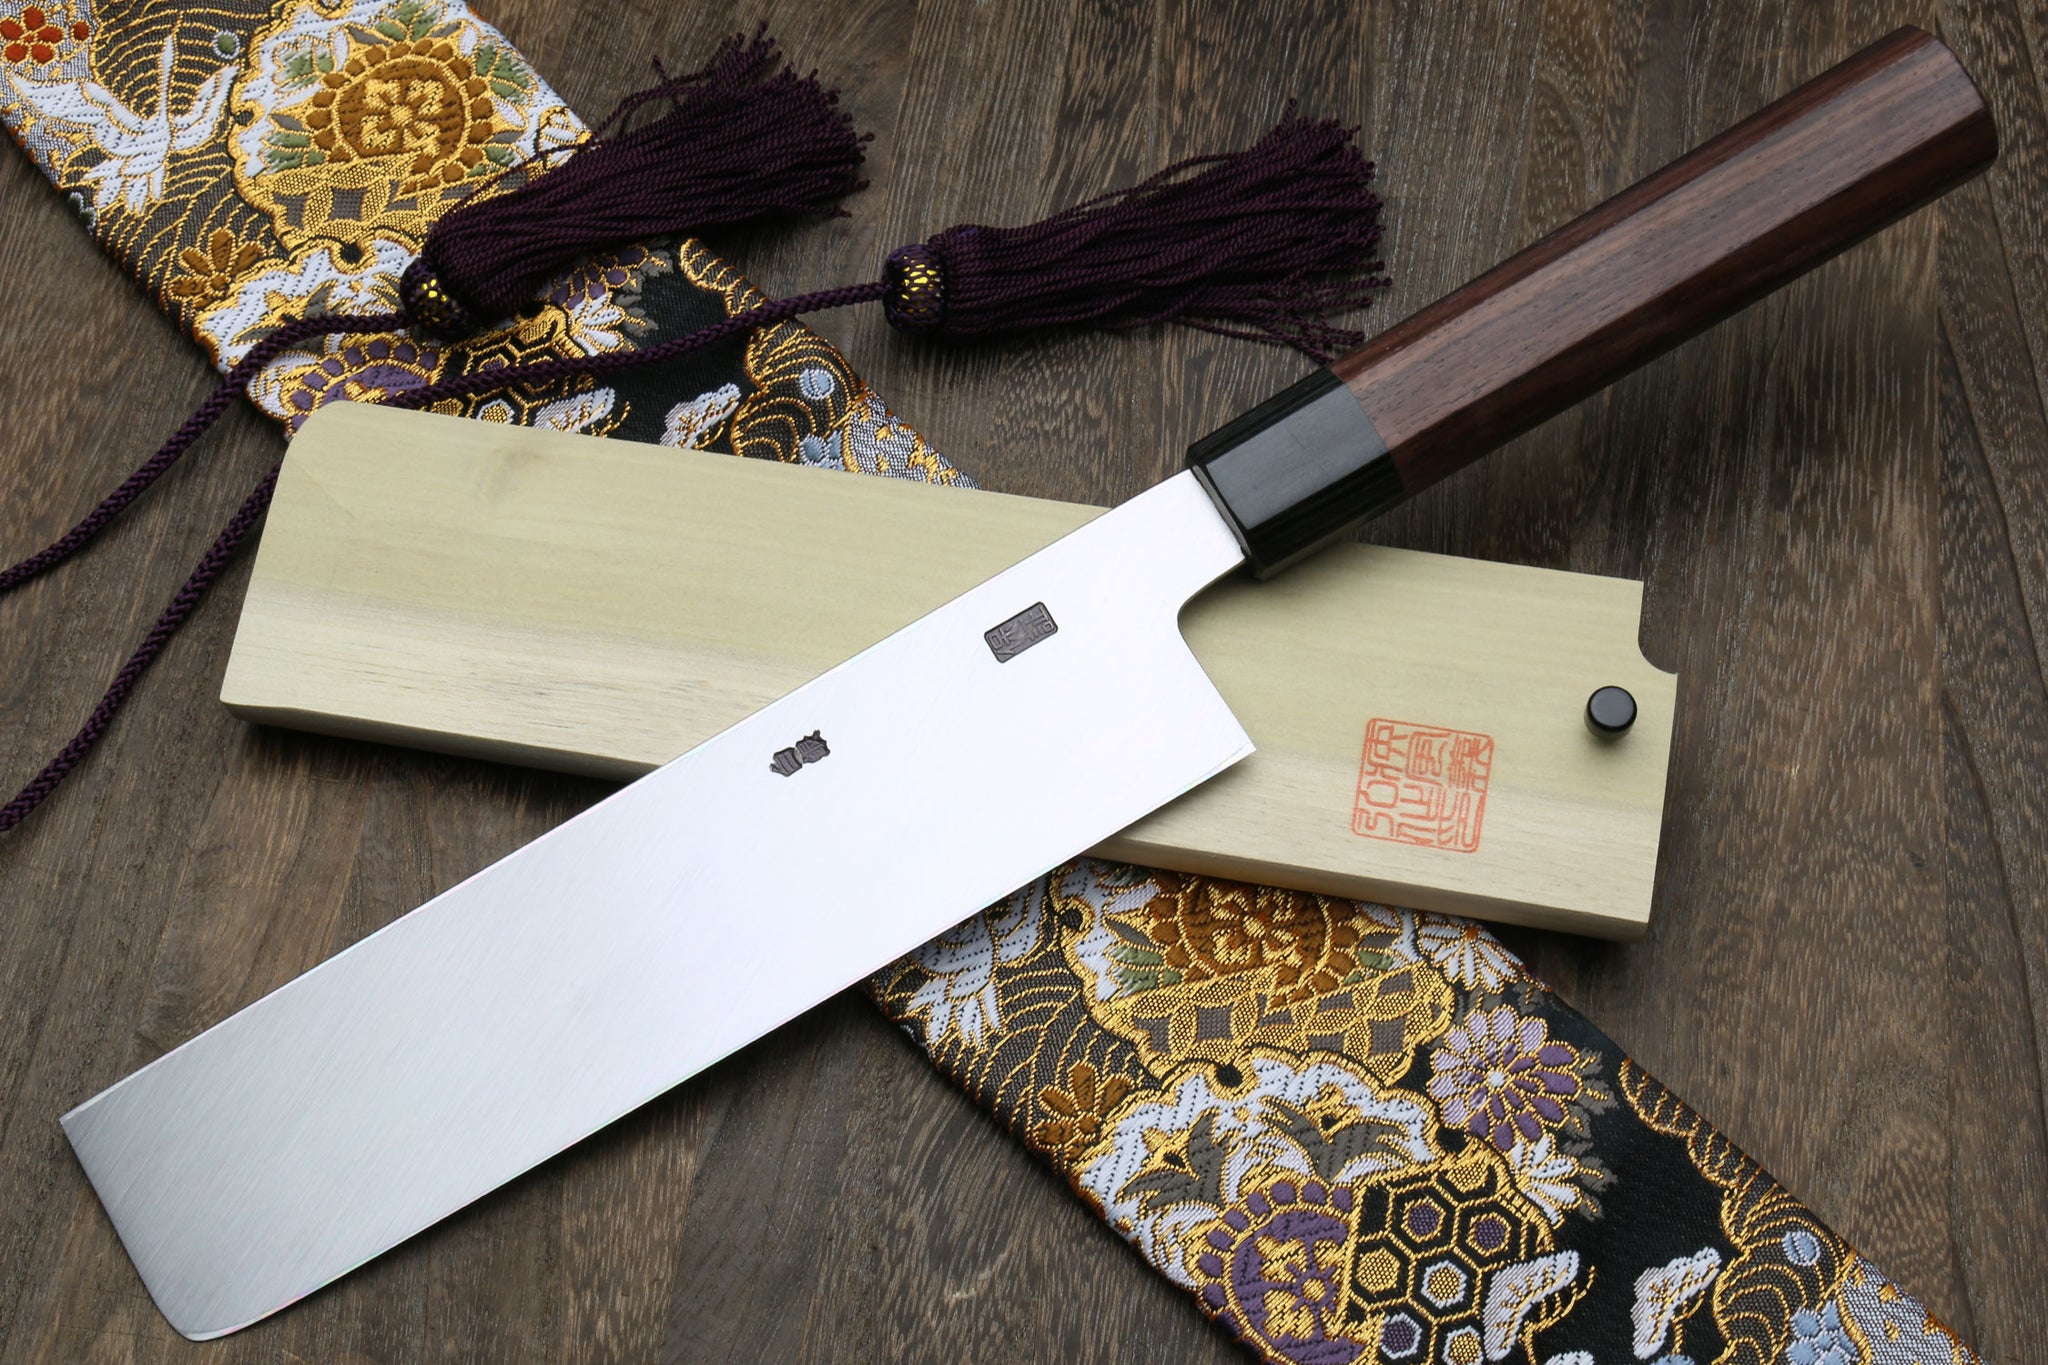 Heavily Used Knife vs Rust Eraser - Japanese Sabitori Usage and Whetstone  Polishing 